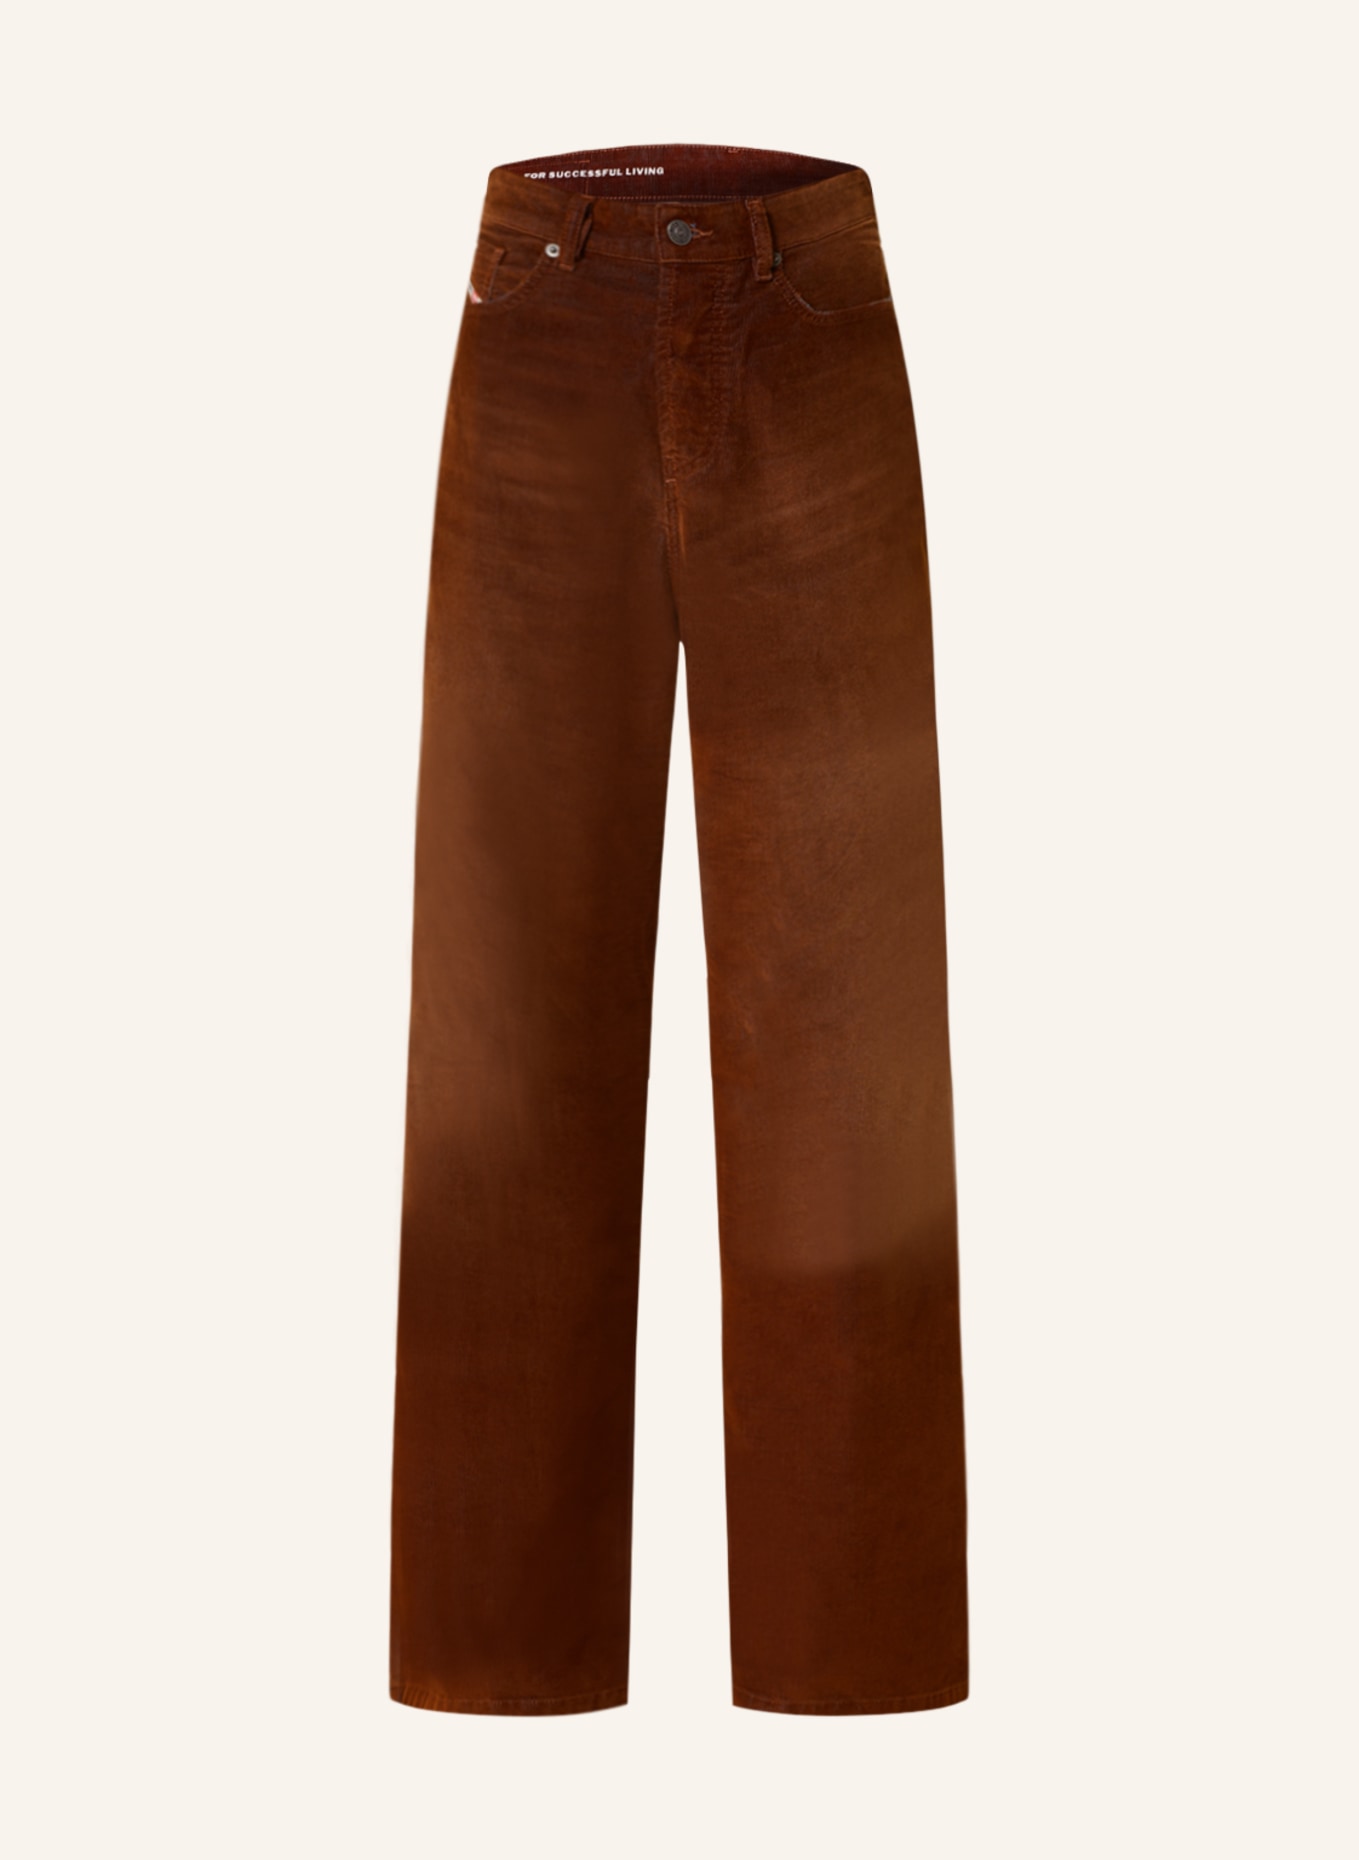 DIESEL Corduroy trousers 1996 D-SIRE, Color: DARK ORANGE (Image 1)